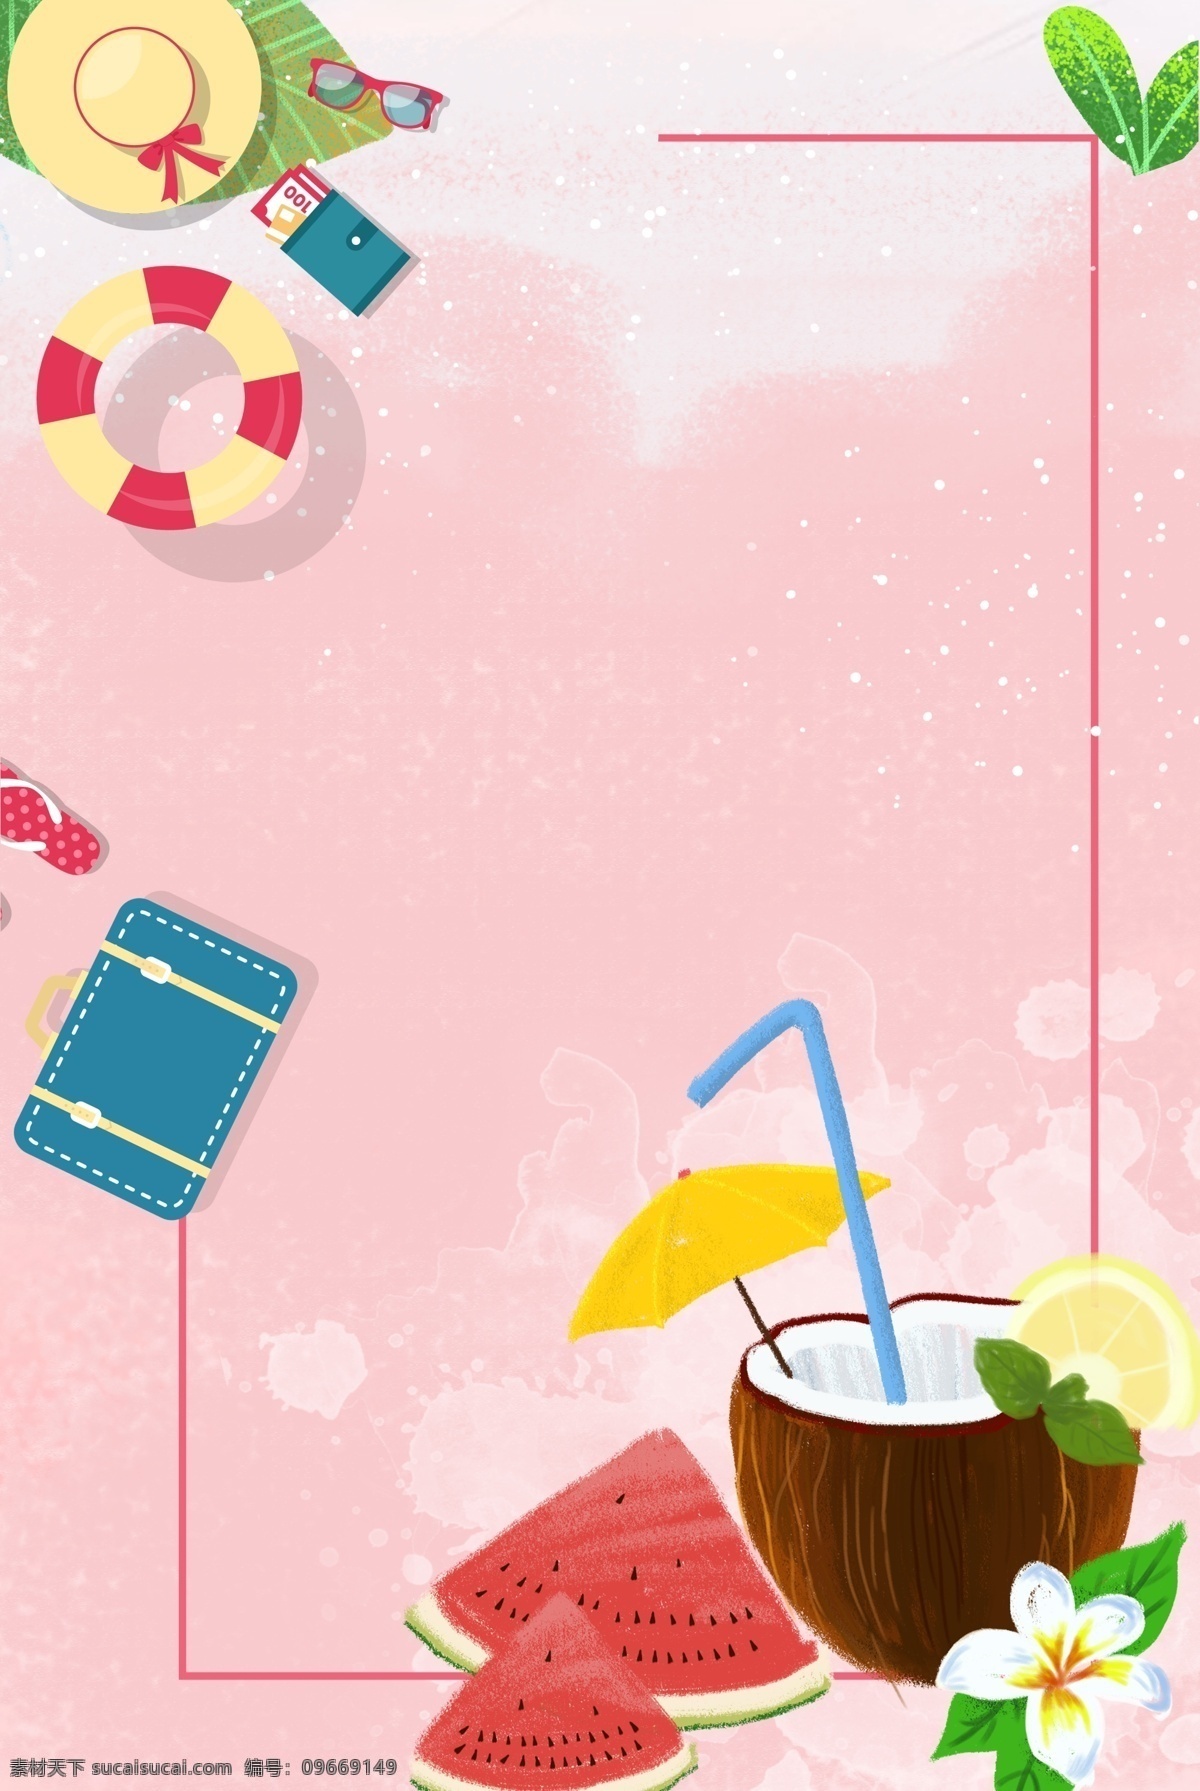 夏日 降温 冰凉 饮品 粉色 背景 旅行 冰凉饮品 西瓜 泳圈 太阳镜 帽子 树叶 简约 手绘